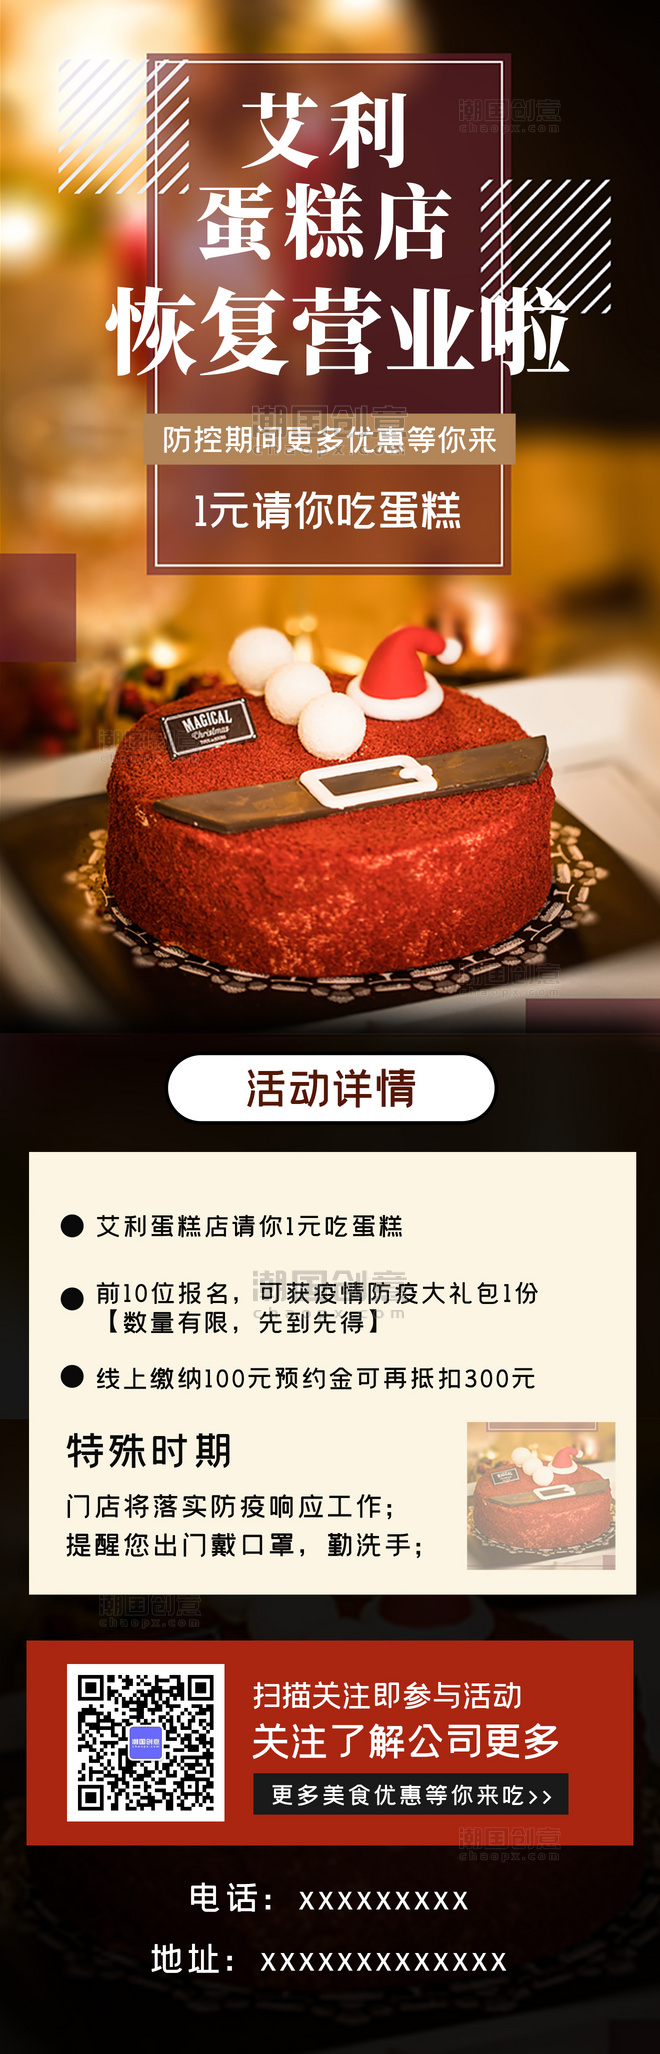 蛋糕店美食餐饮复工通知促销宣传摄影图H5长图海报